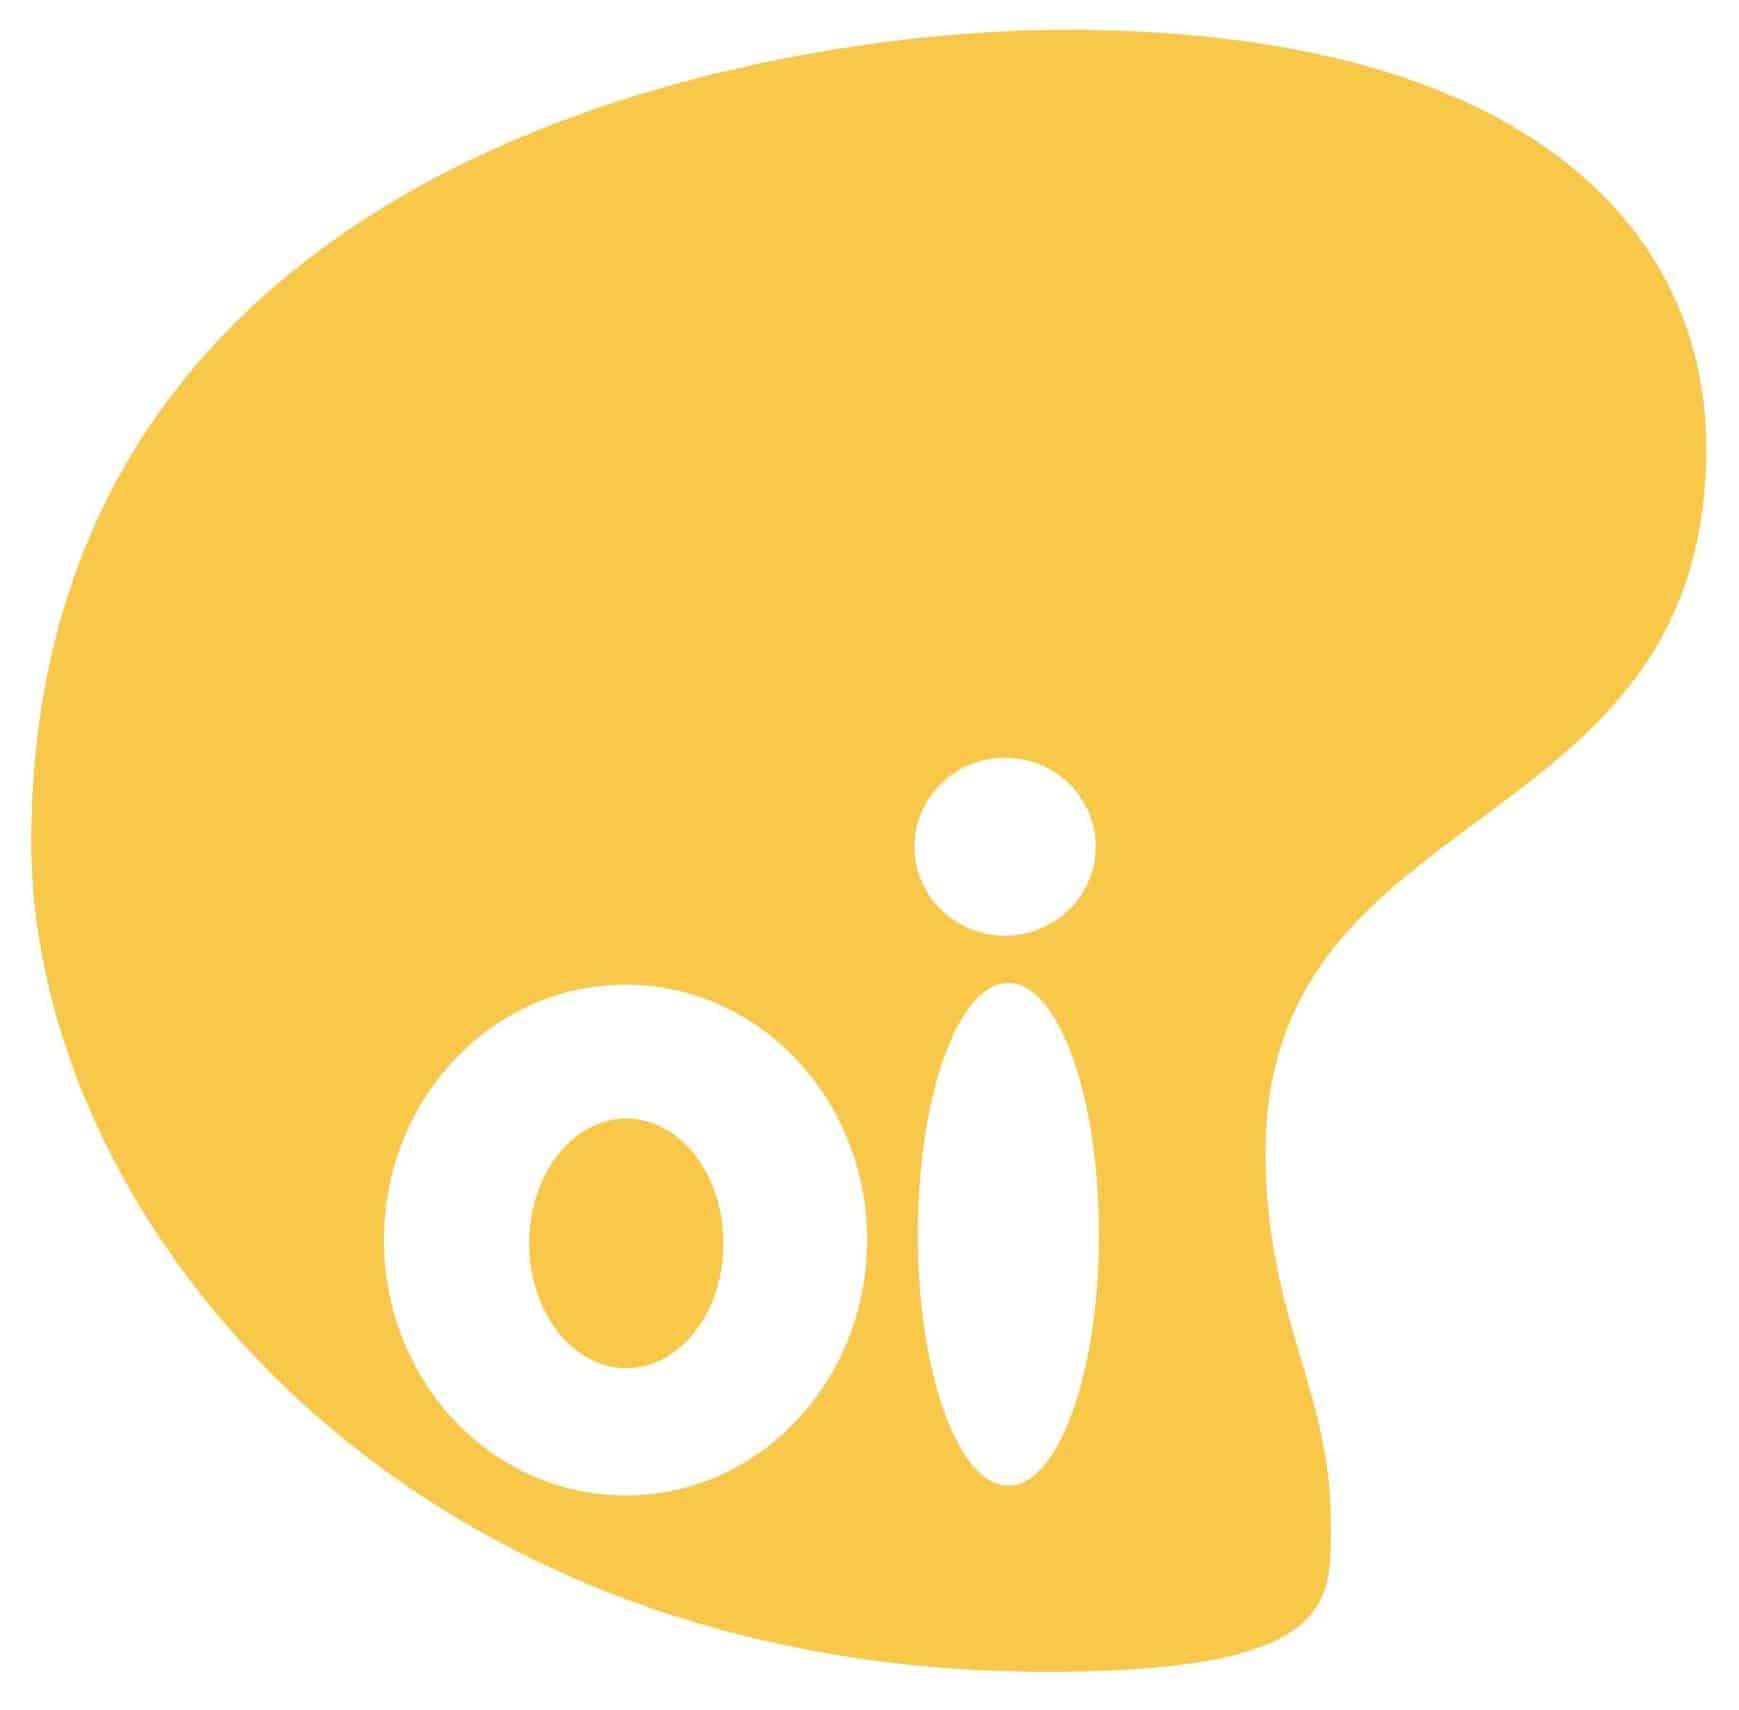 oi telecommunications logo